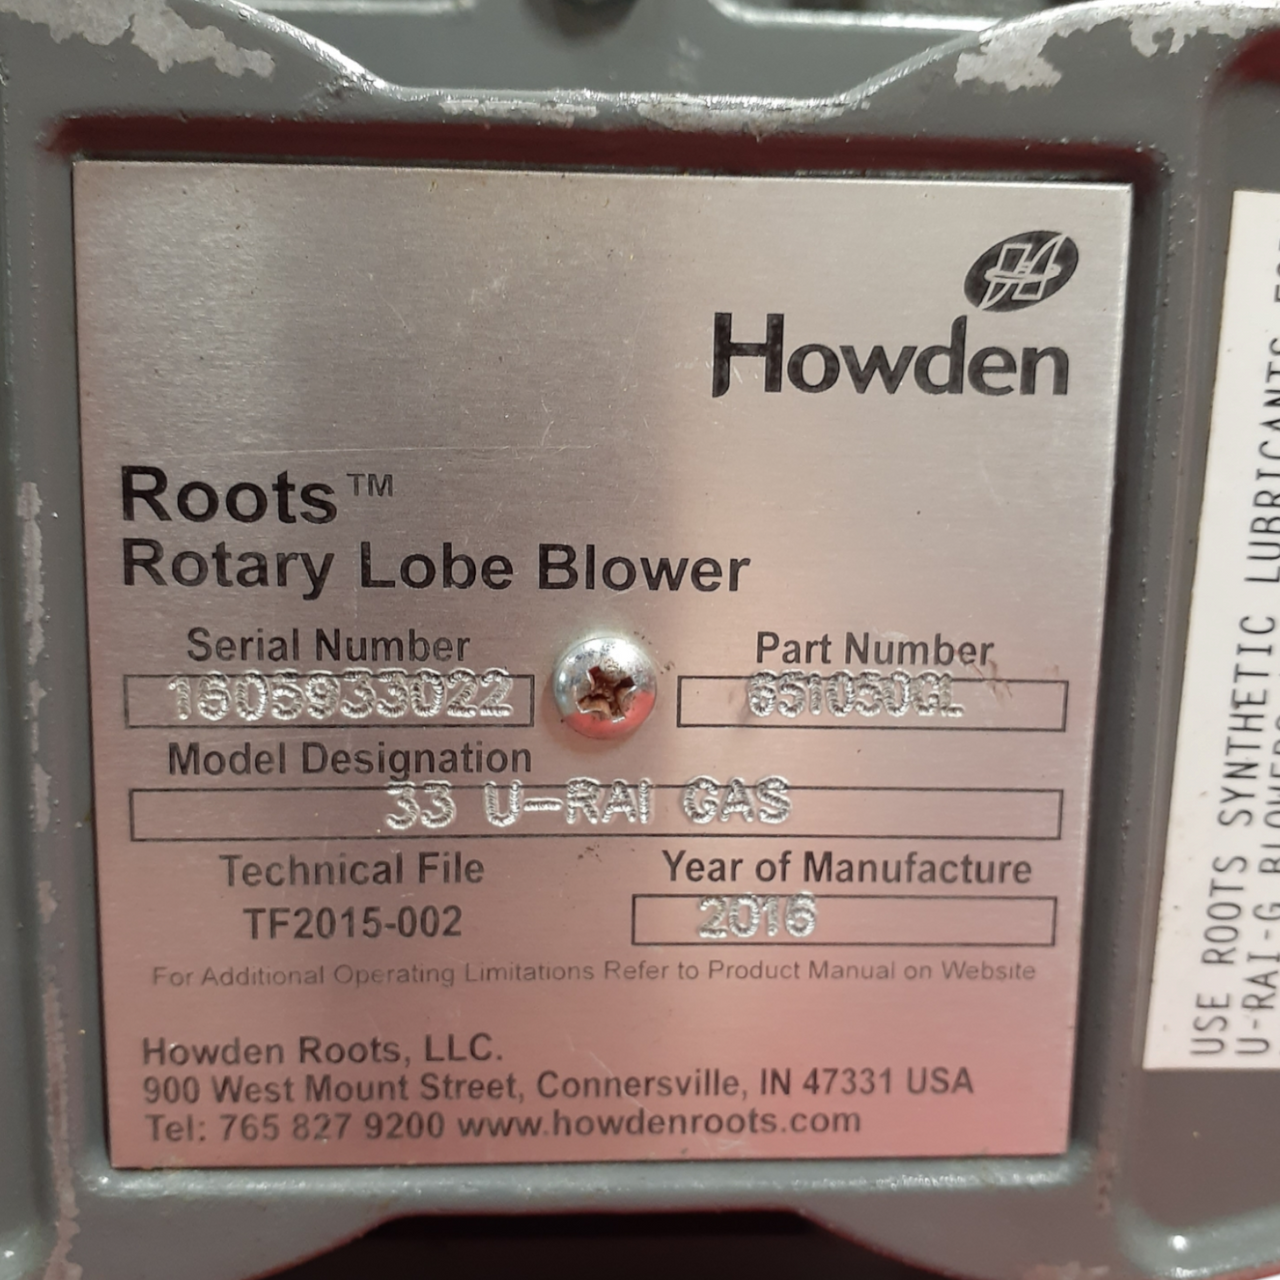 Howden 651050GL, 33 U-RAI Gas Roots Rotary Lobe Blower